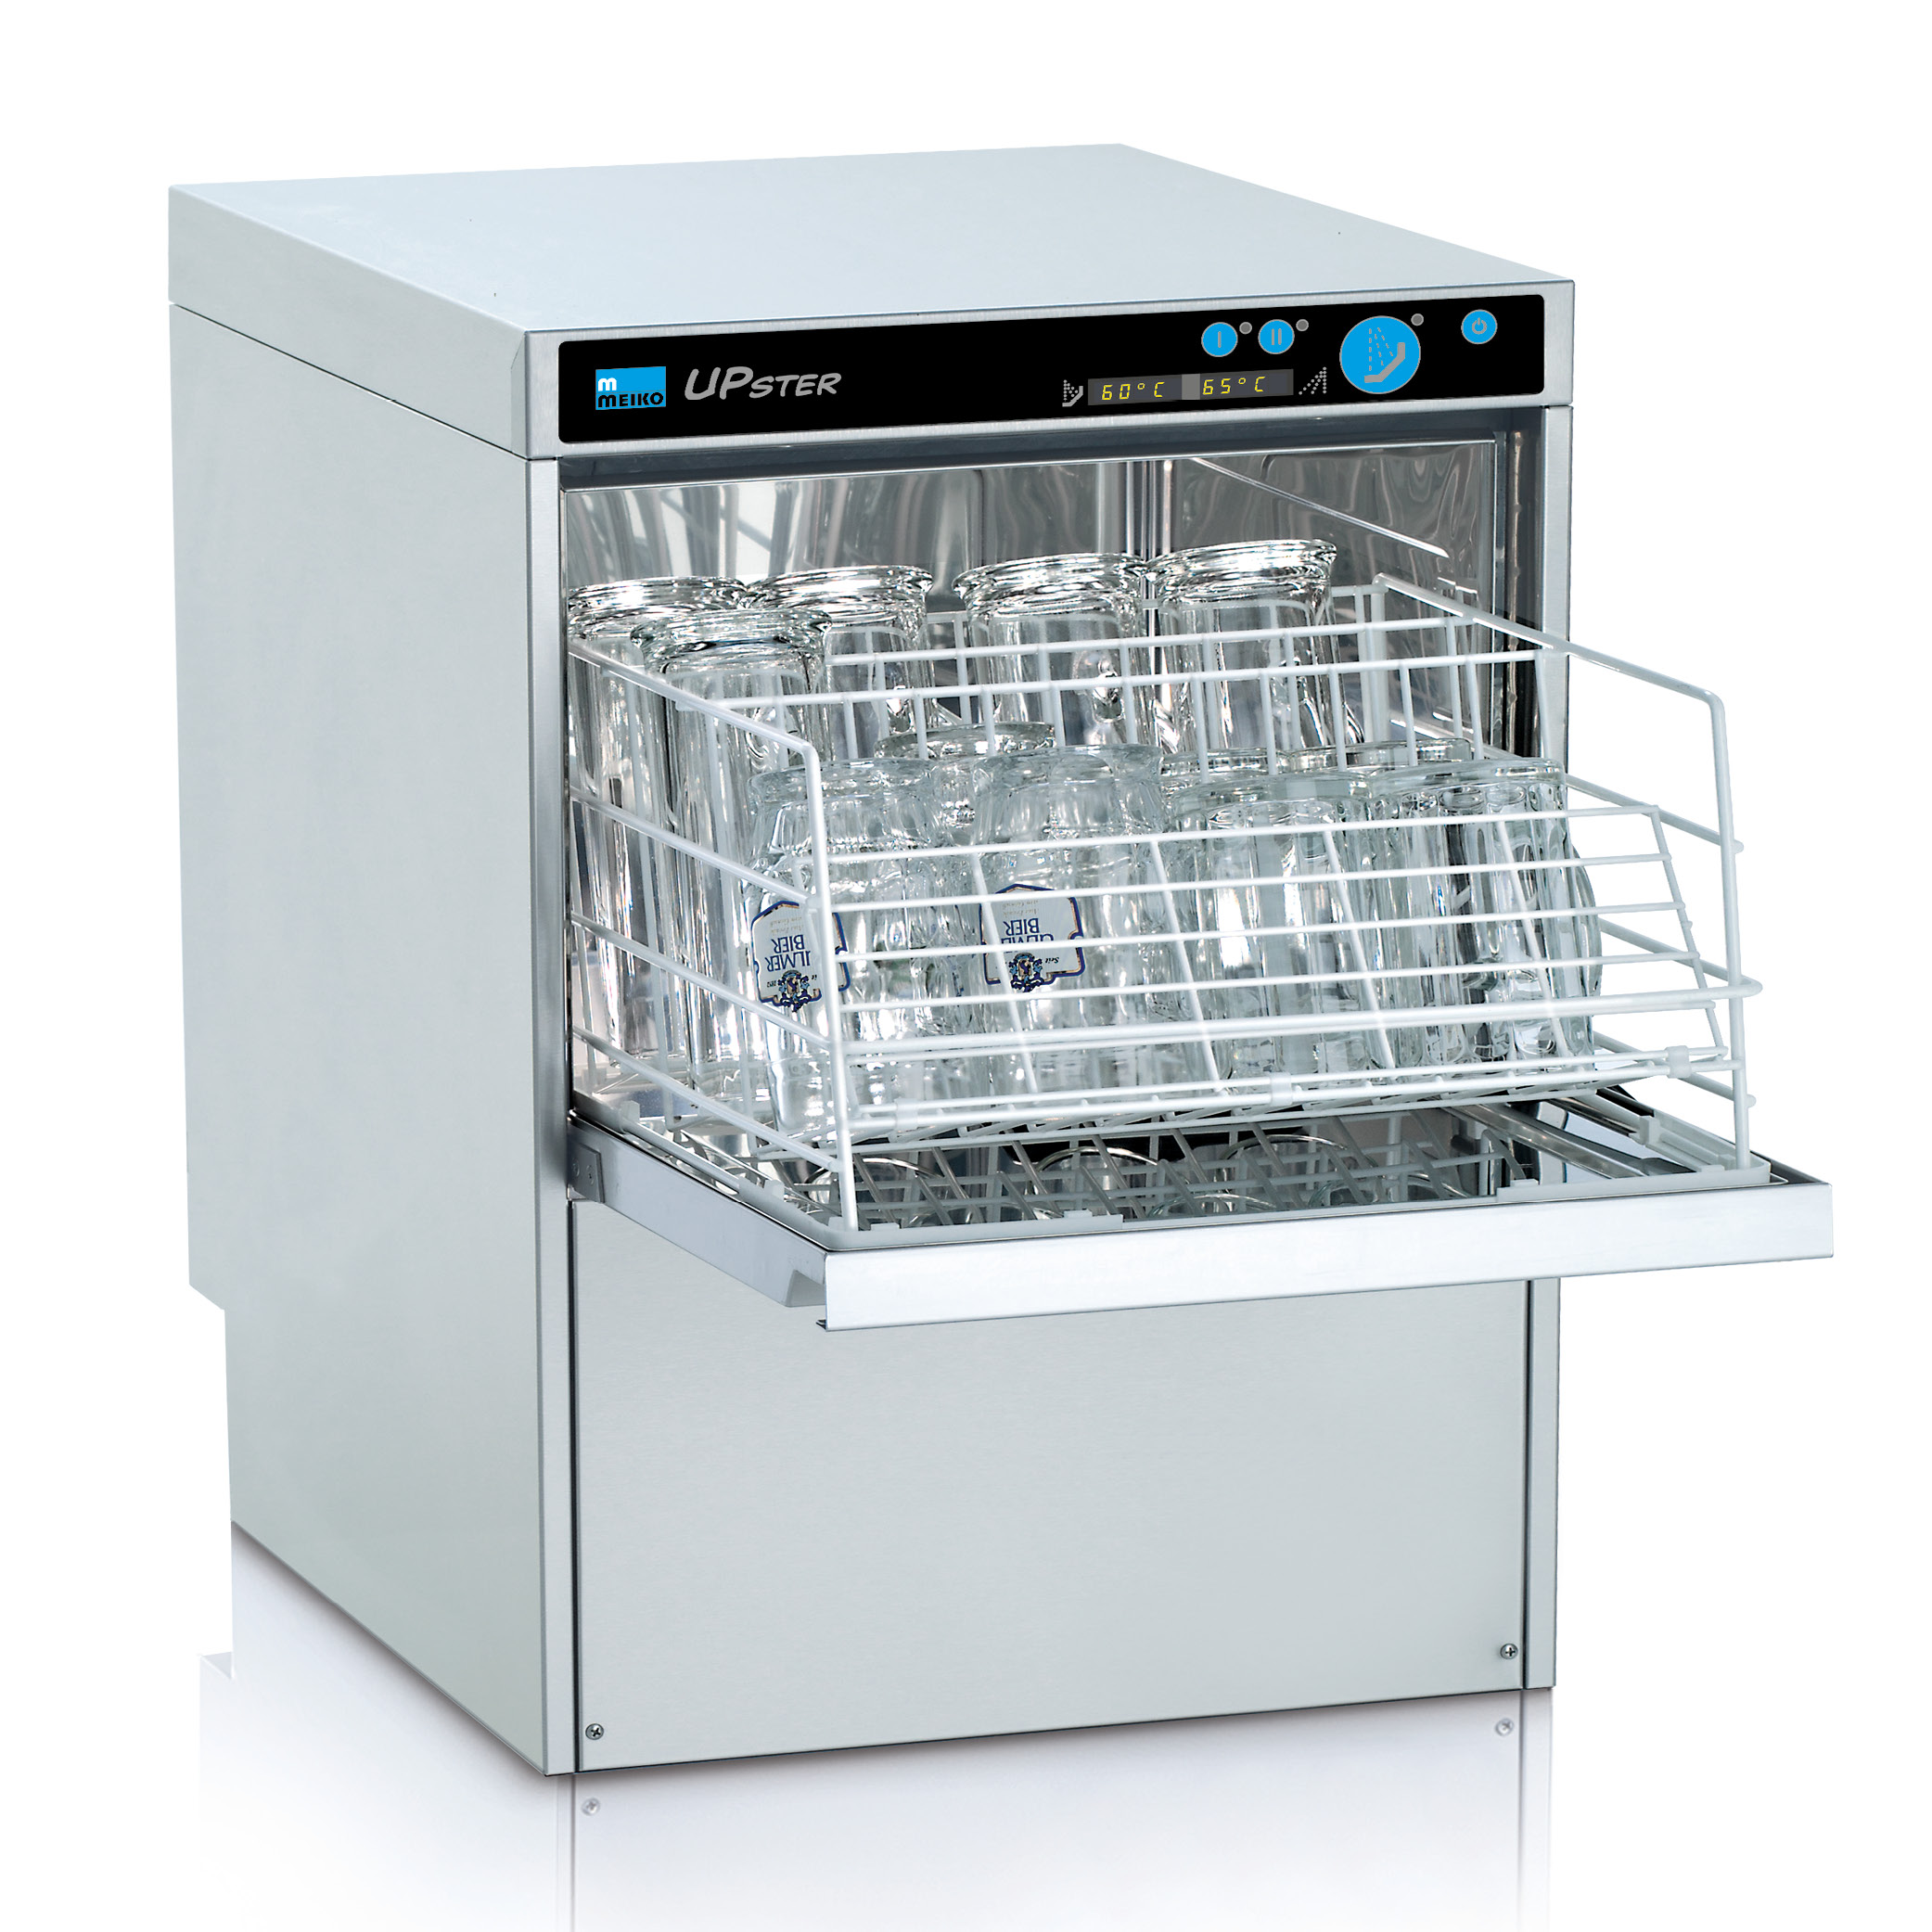 UPster Series - Dishwashing machines